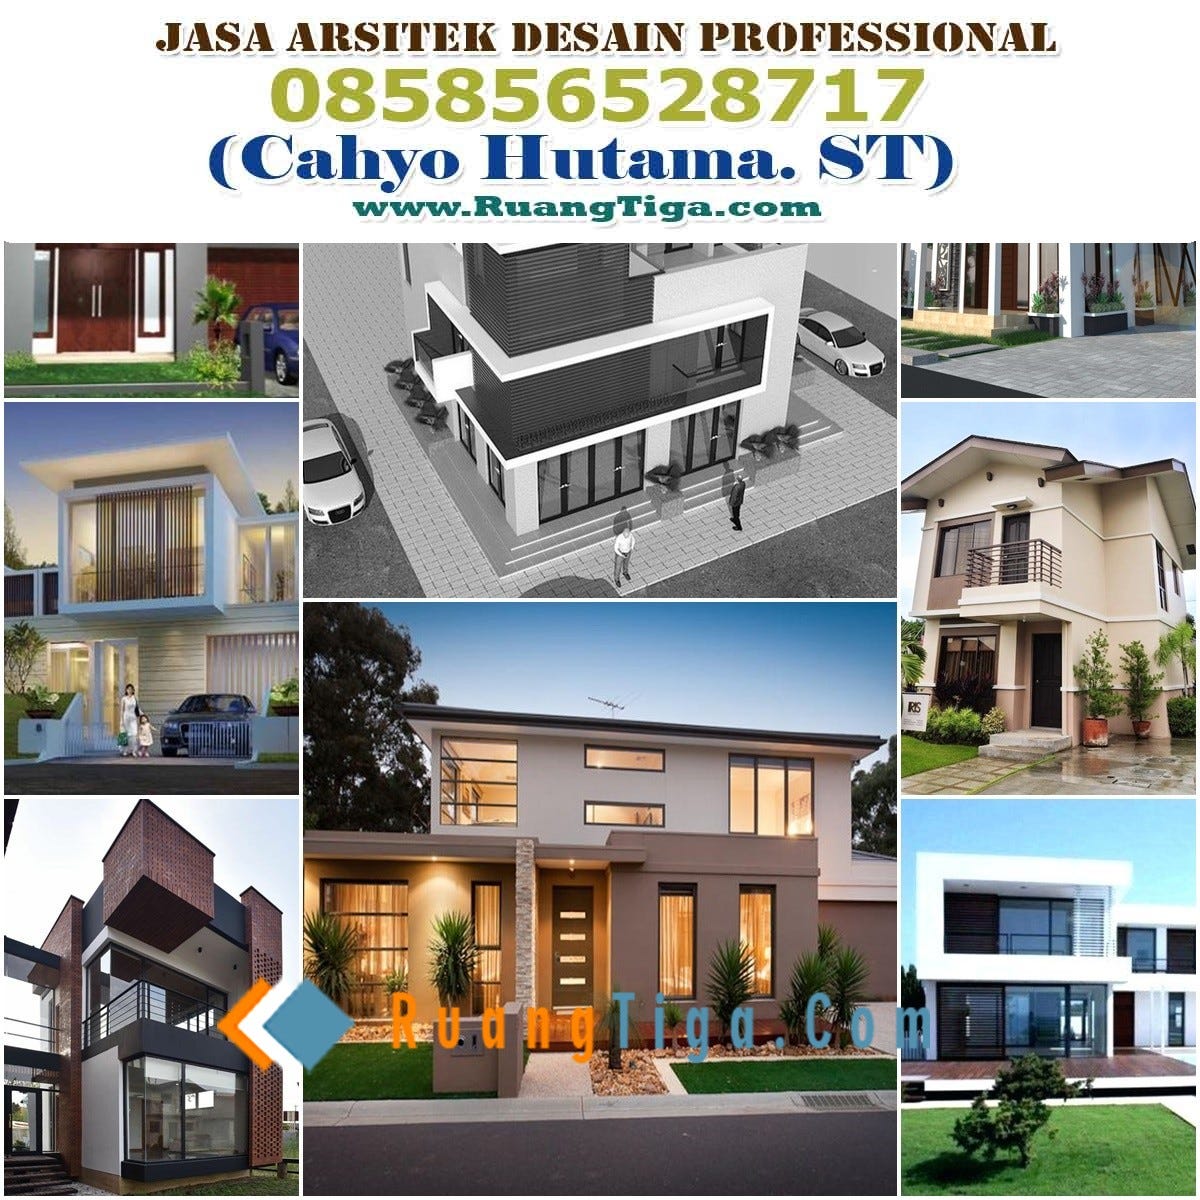 085856528717 Jasa Desain Rumah Bandung Jasa Desain Rumah